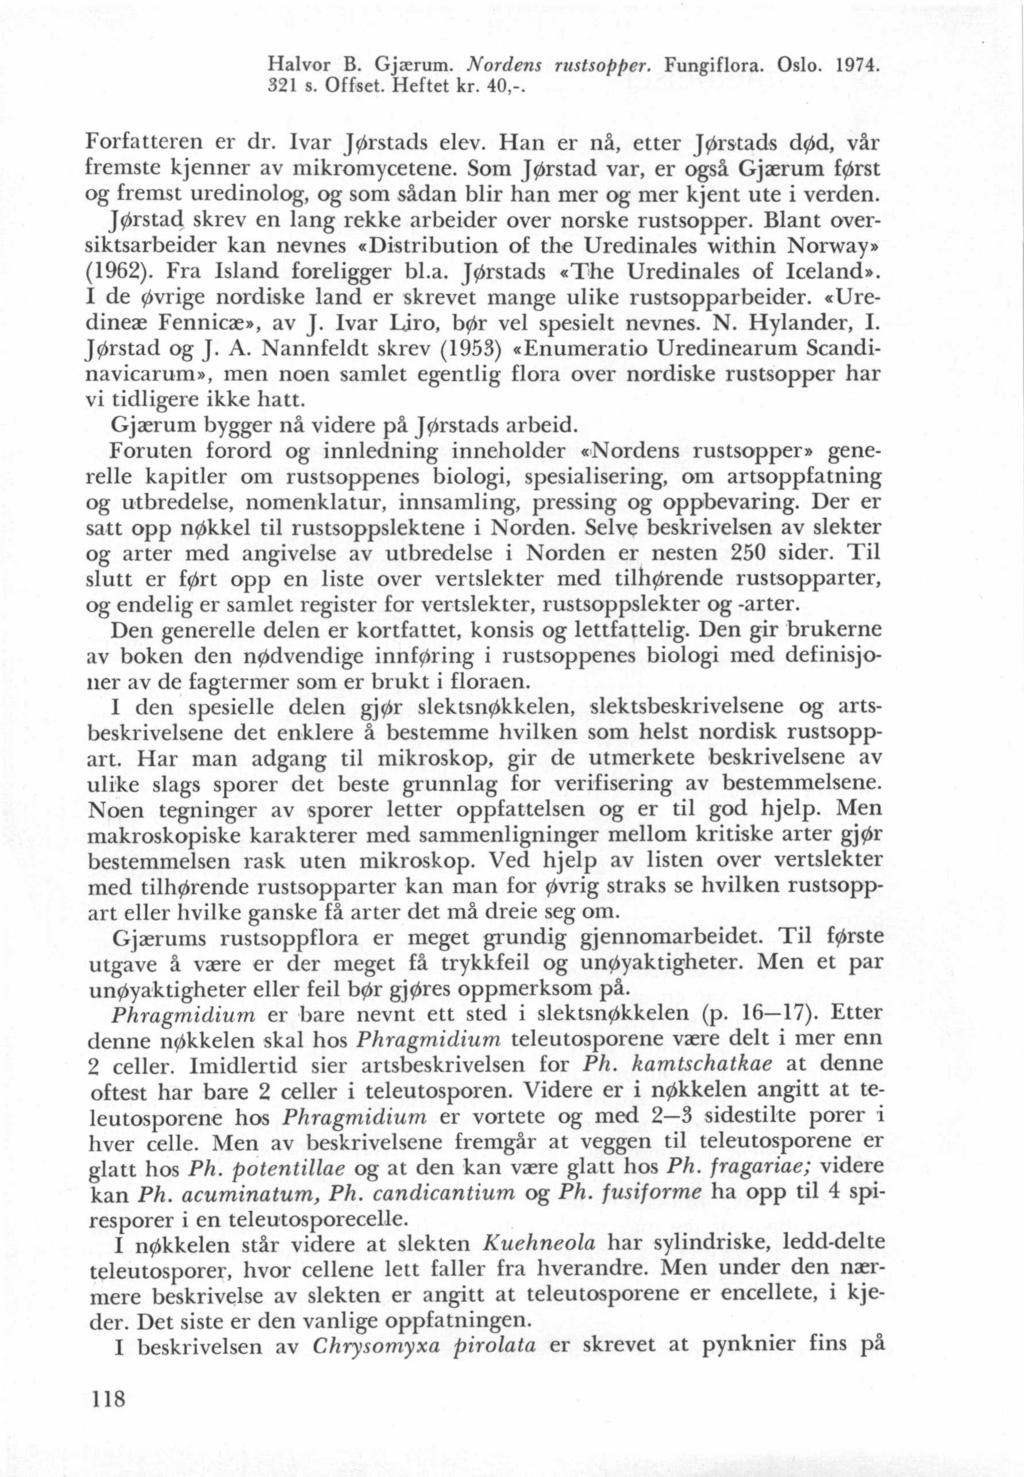 Halvor B. Gjarum. Nordens rustsoplter, Fungiflora. Oslo. 1974. 321 s. Offset. Heftet kr. 40,-. Forfatteren er dr. Ivar J/rstads elev.